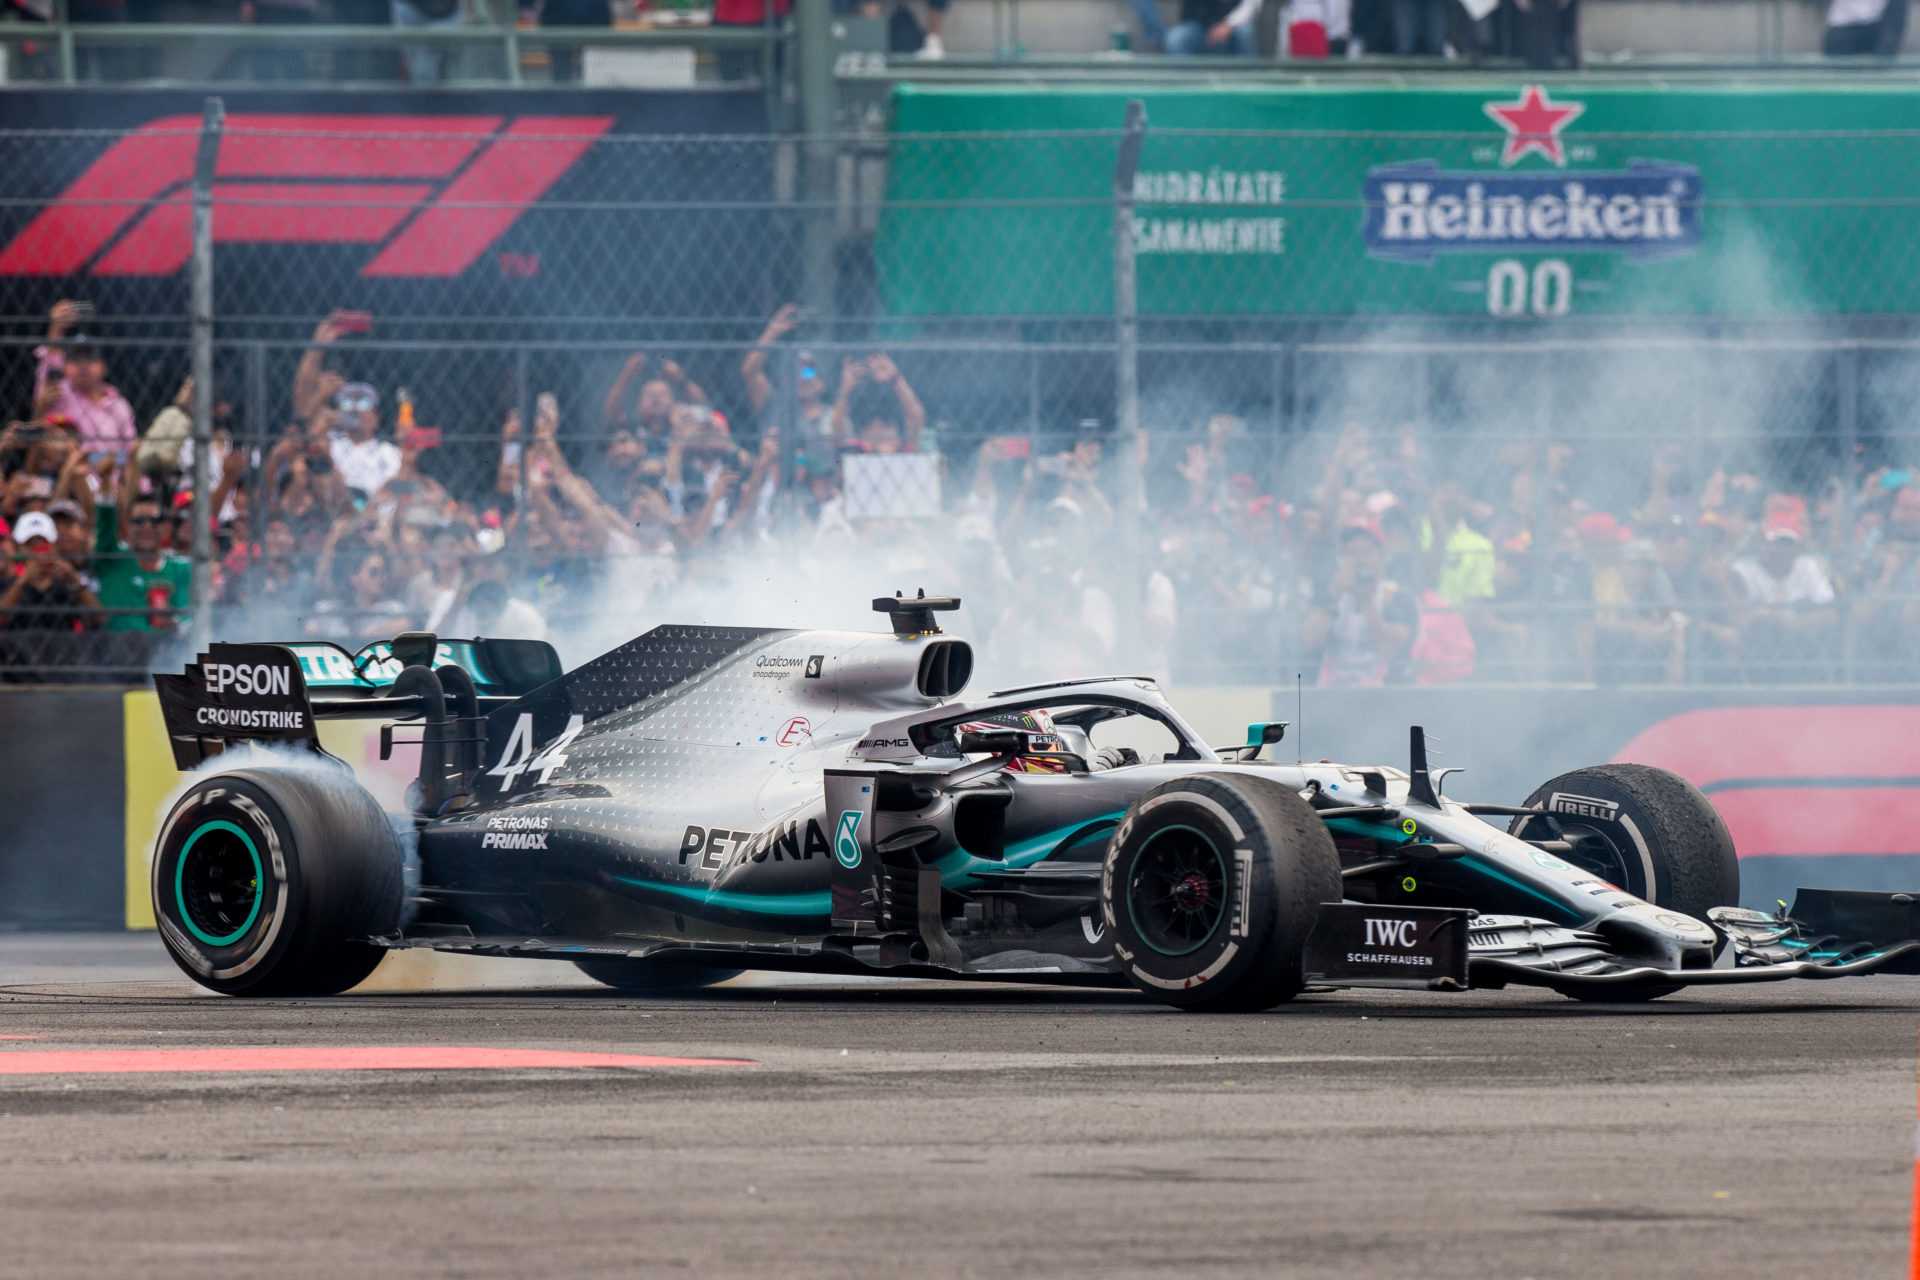 Qu'est-ce que le sandbagging et pourquoi Mercedes est-elle souvent accusée d'avoir suivi cette tactique de F1?